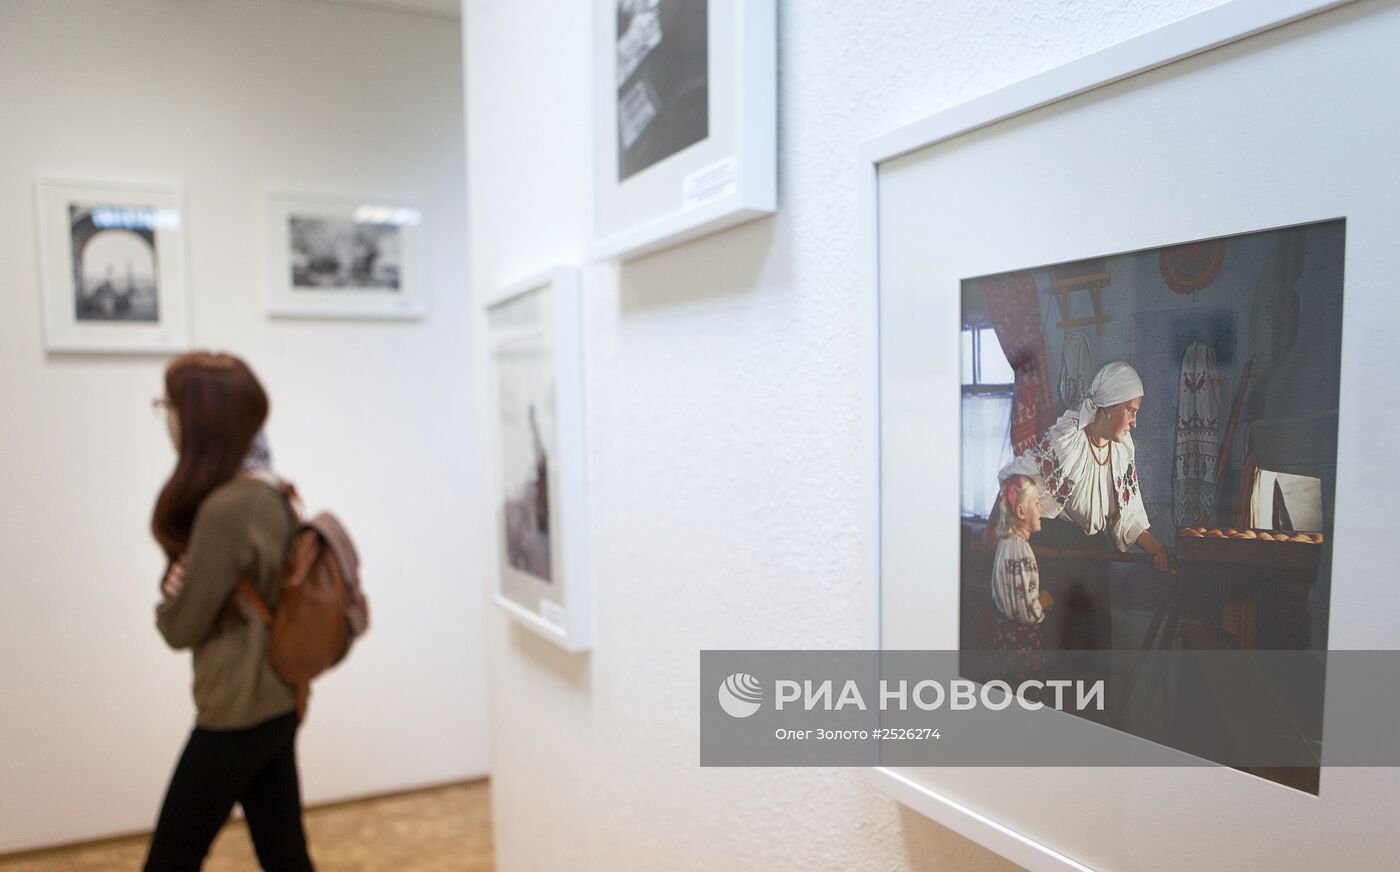 Открытие фотовыставки Анатолия Гаранина в Нижнем Новгороде